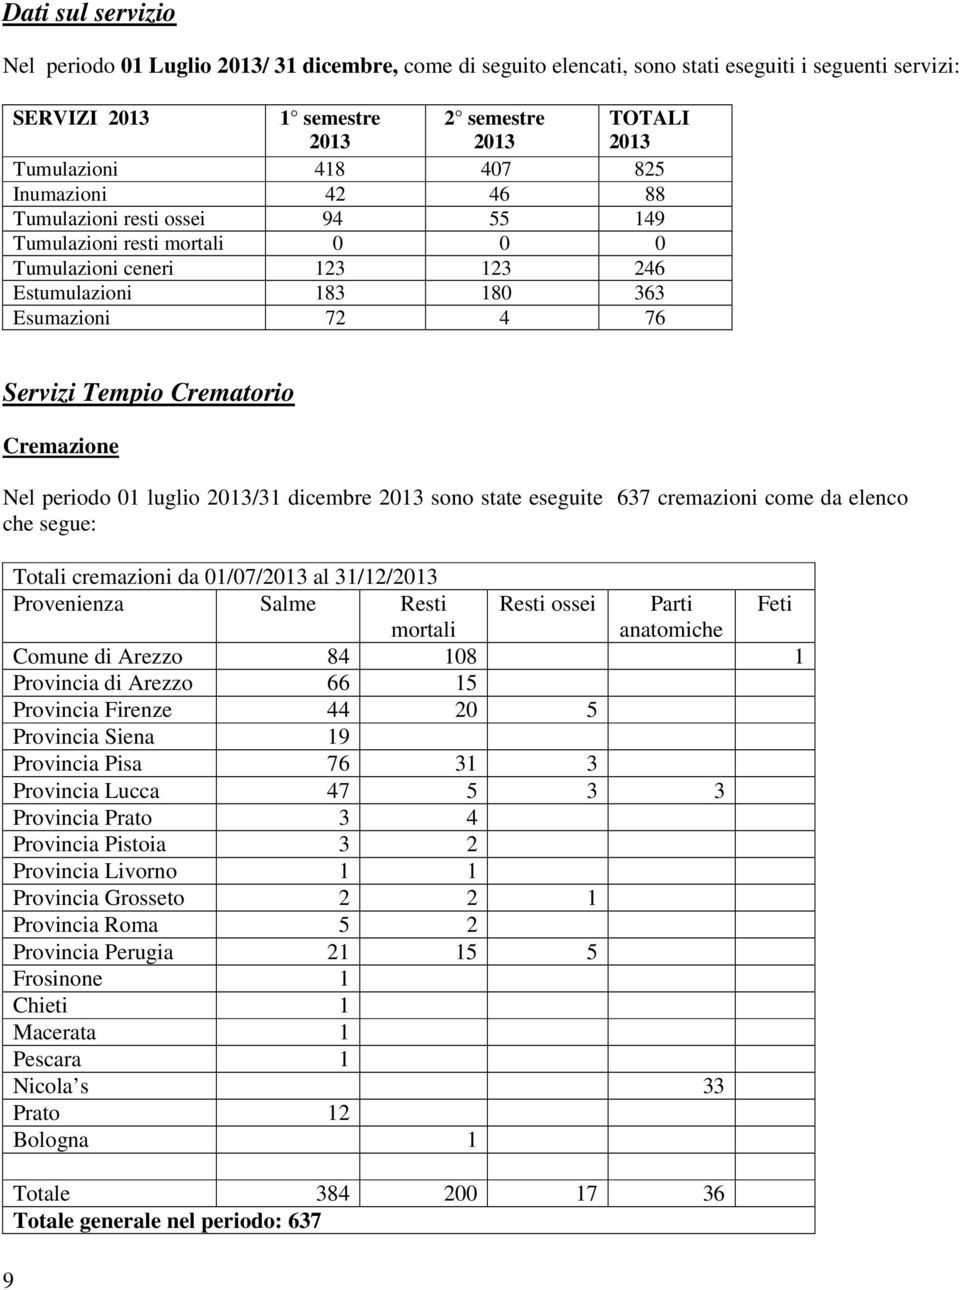 Cremazione Nel periodo 01 luglio 2013/31 dicembre 2013 sono state eseguite 637 cremazioni come da elenco che segue: Totali cremazioni da 01/07/2013 al 31/12/2013 Provenienza Salme Resti Resti ossei